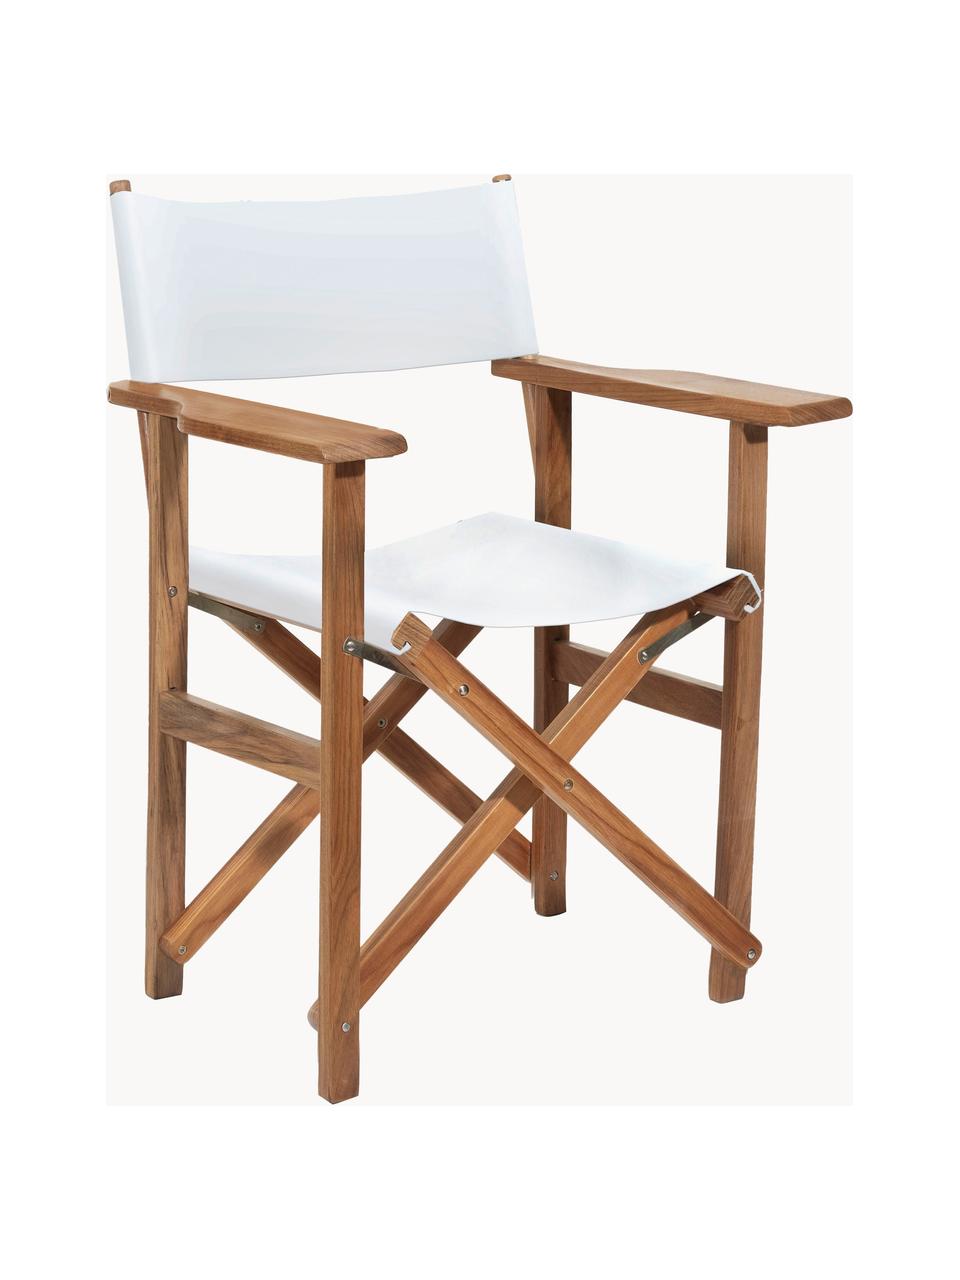 Chaise de jardin pliante Director, Blanc, bois, larg. 64 x haut. 51 cm